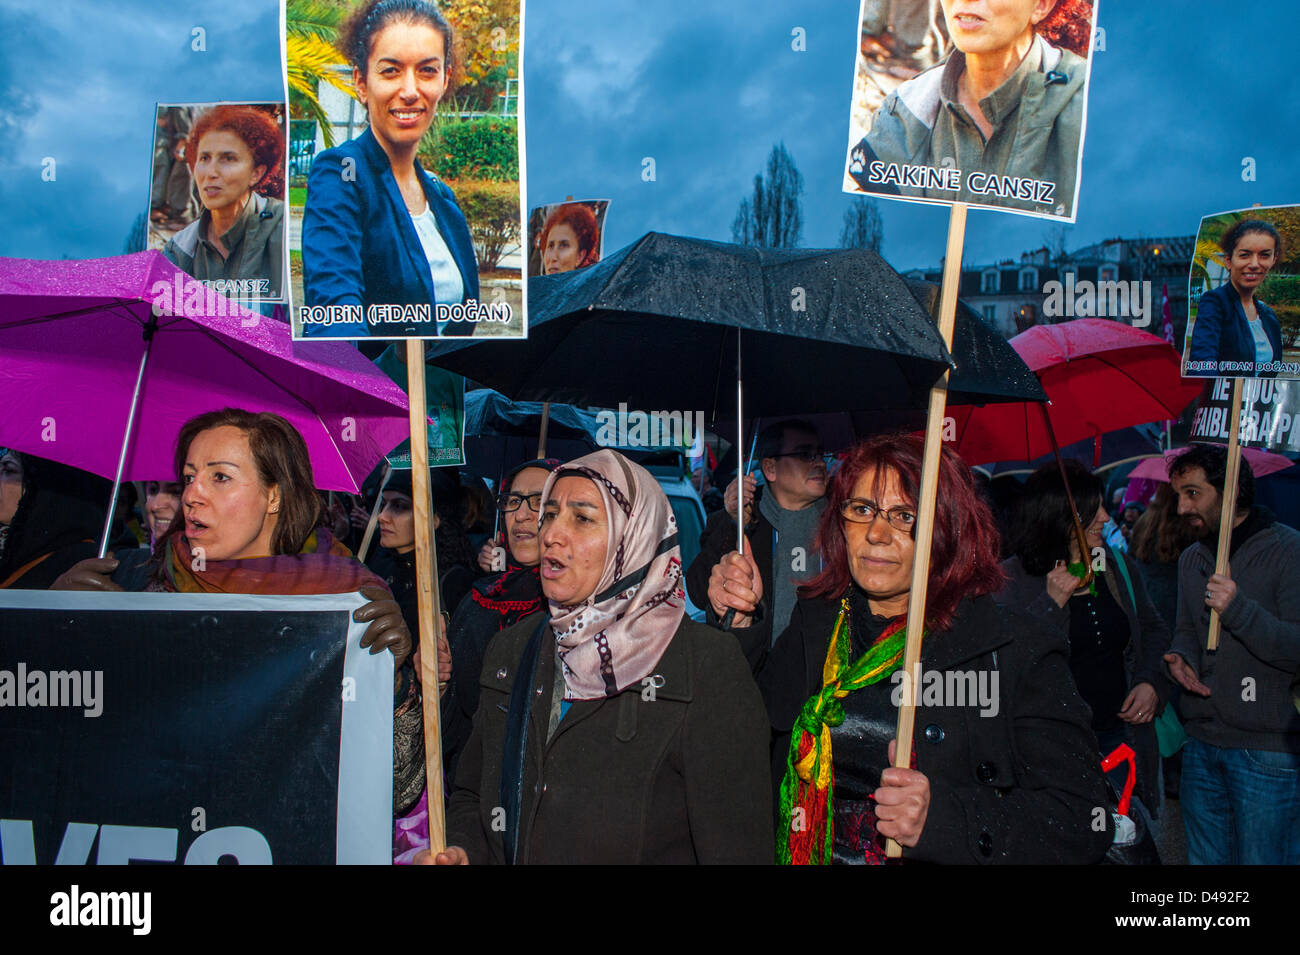 Paris, France. 8 mars, groupes féministes arabes, les femmes défilant avec des signes de protestation, défilant dans la manifestation annuelle de la Journée internationale de la femme, manifestations activistes des droits de l'homme, égalité des femmes, immigrants internationaux, protestant les droits des femmes mars Banque D'Images